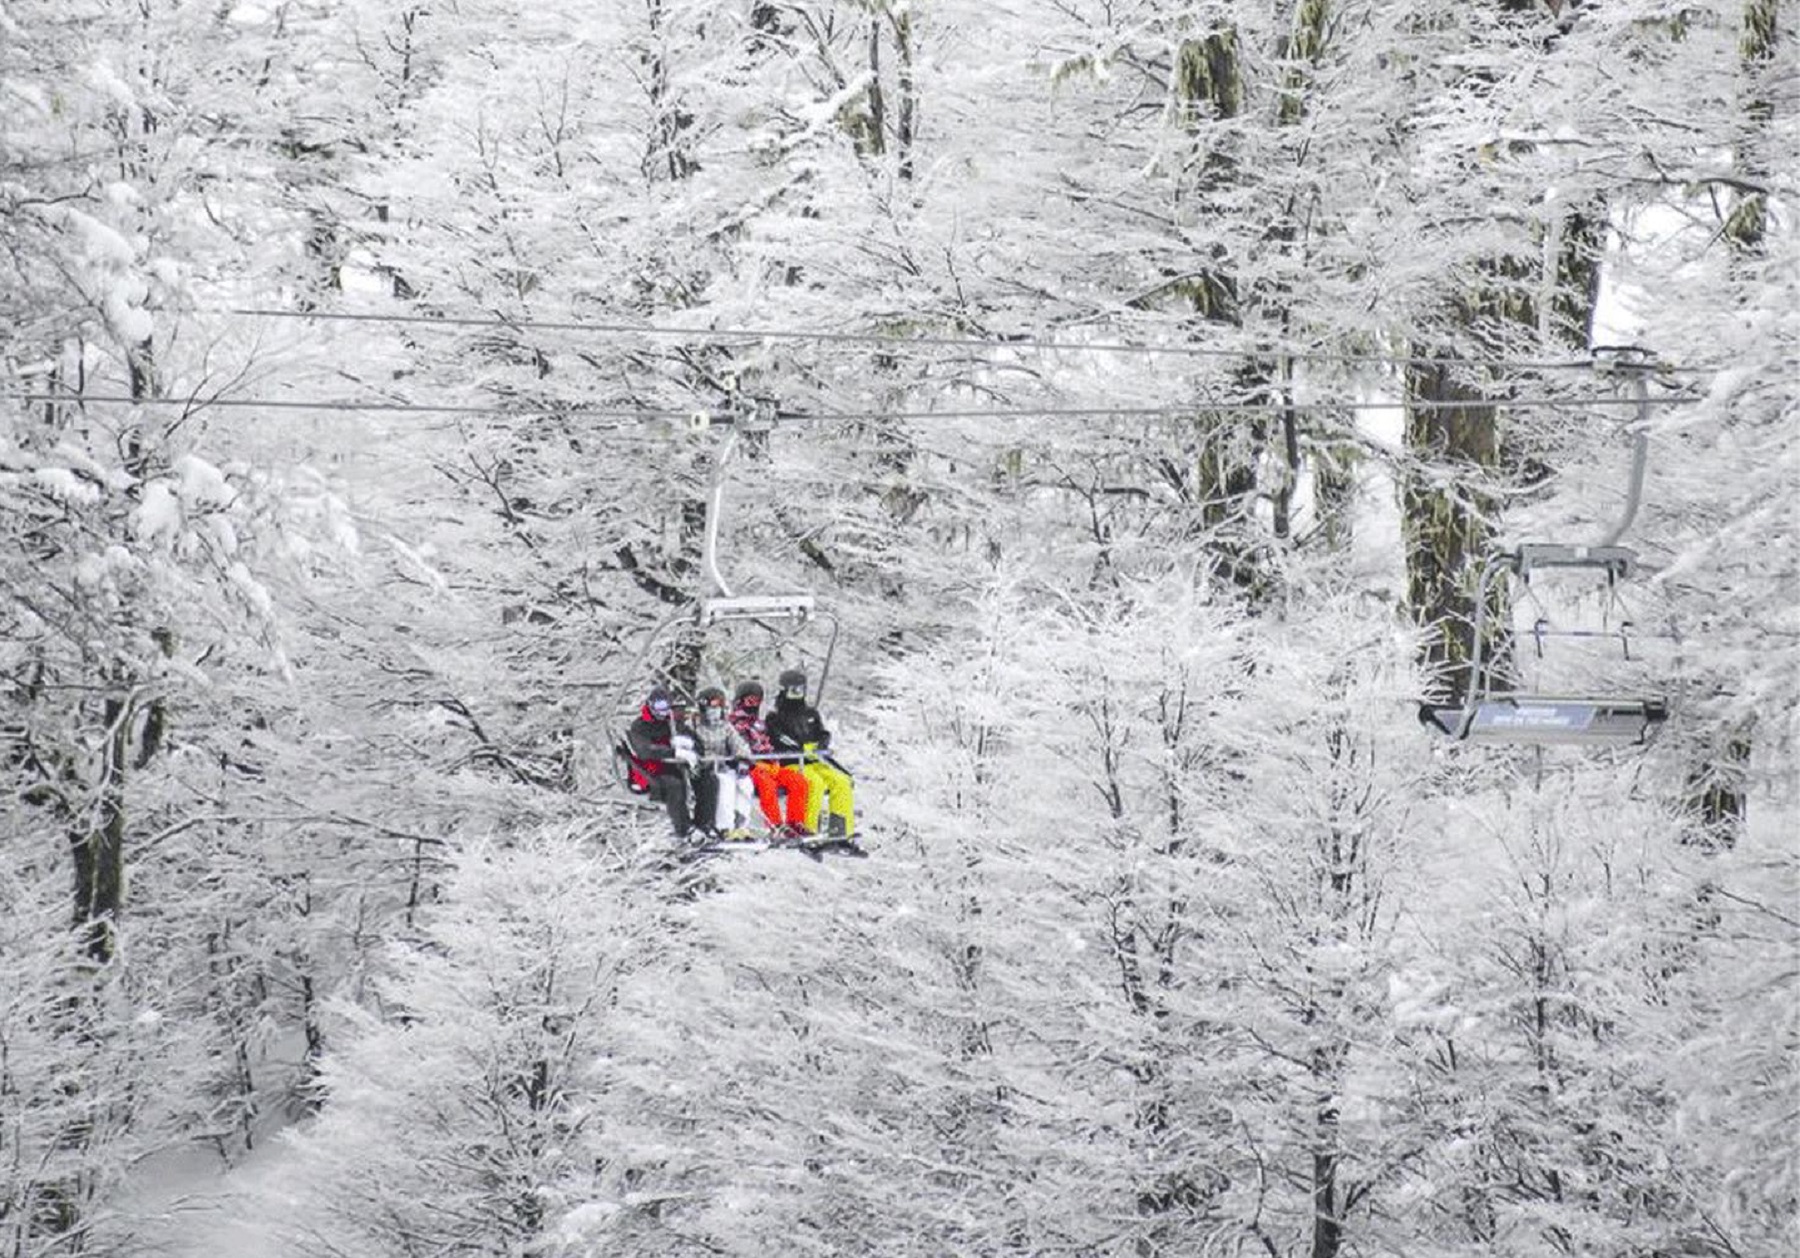 En San Martín de los Andes, ya venden pases anticipados para este invierno, con precios más bajos que los que ofrecen otros centros de esquí del país.